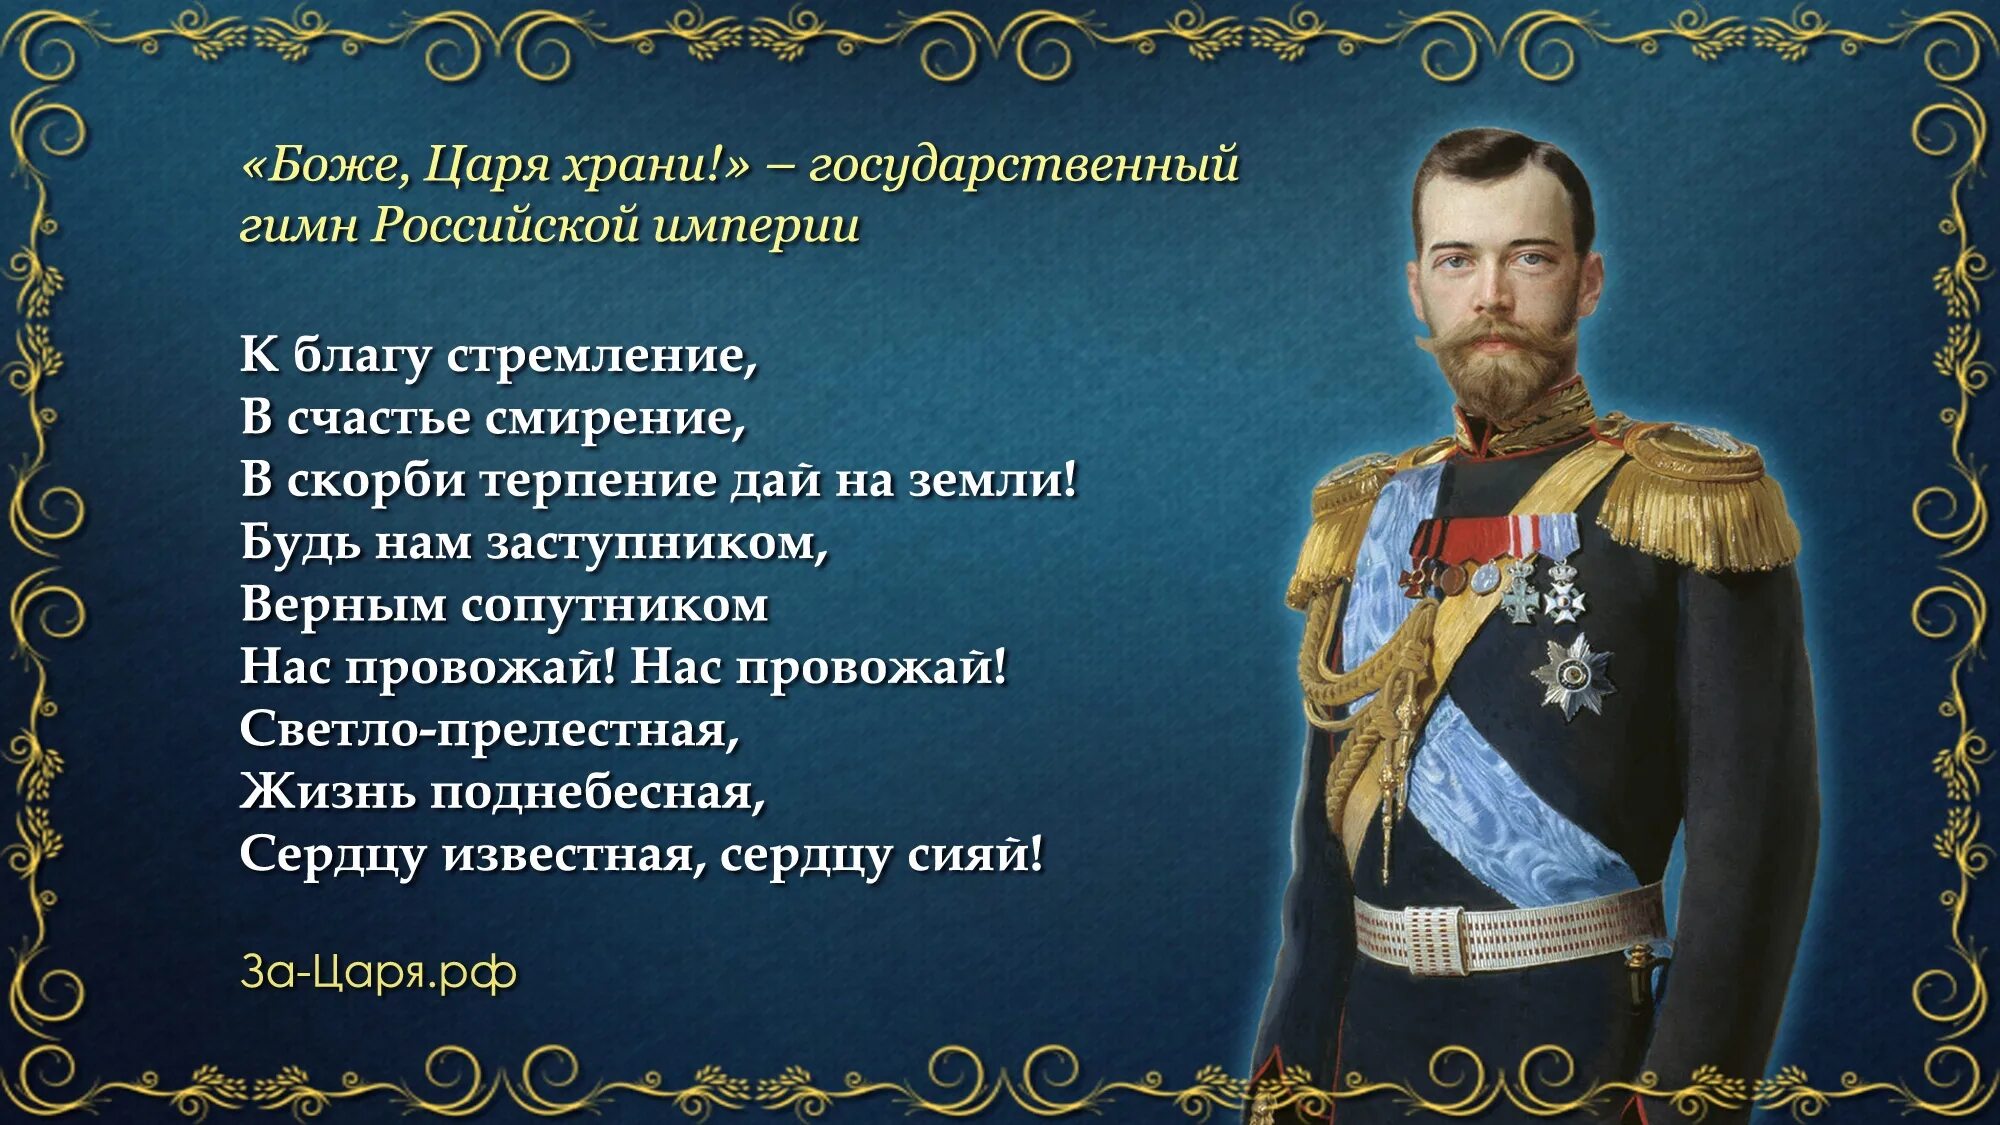 Боже царя храни. Гимн Российской империи. Король афоризмы